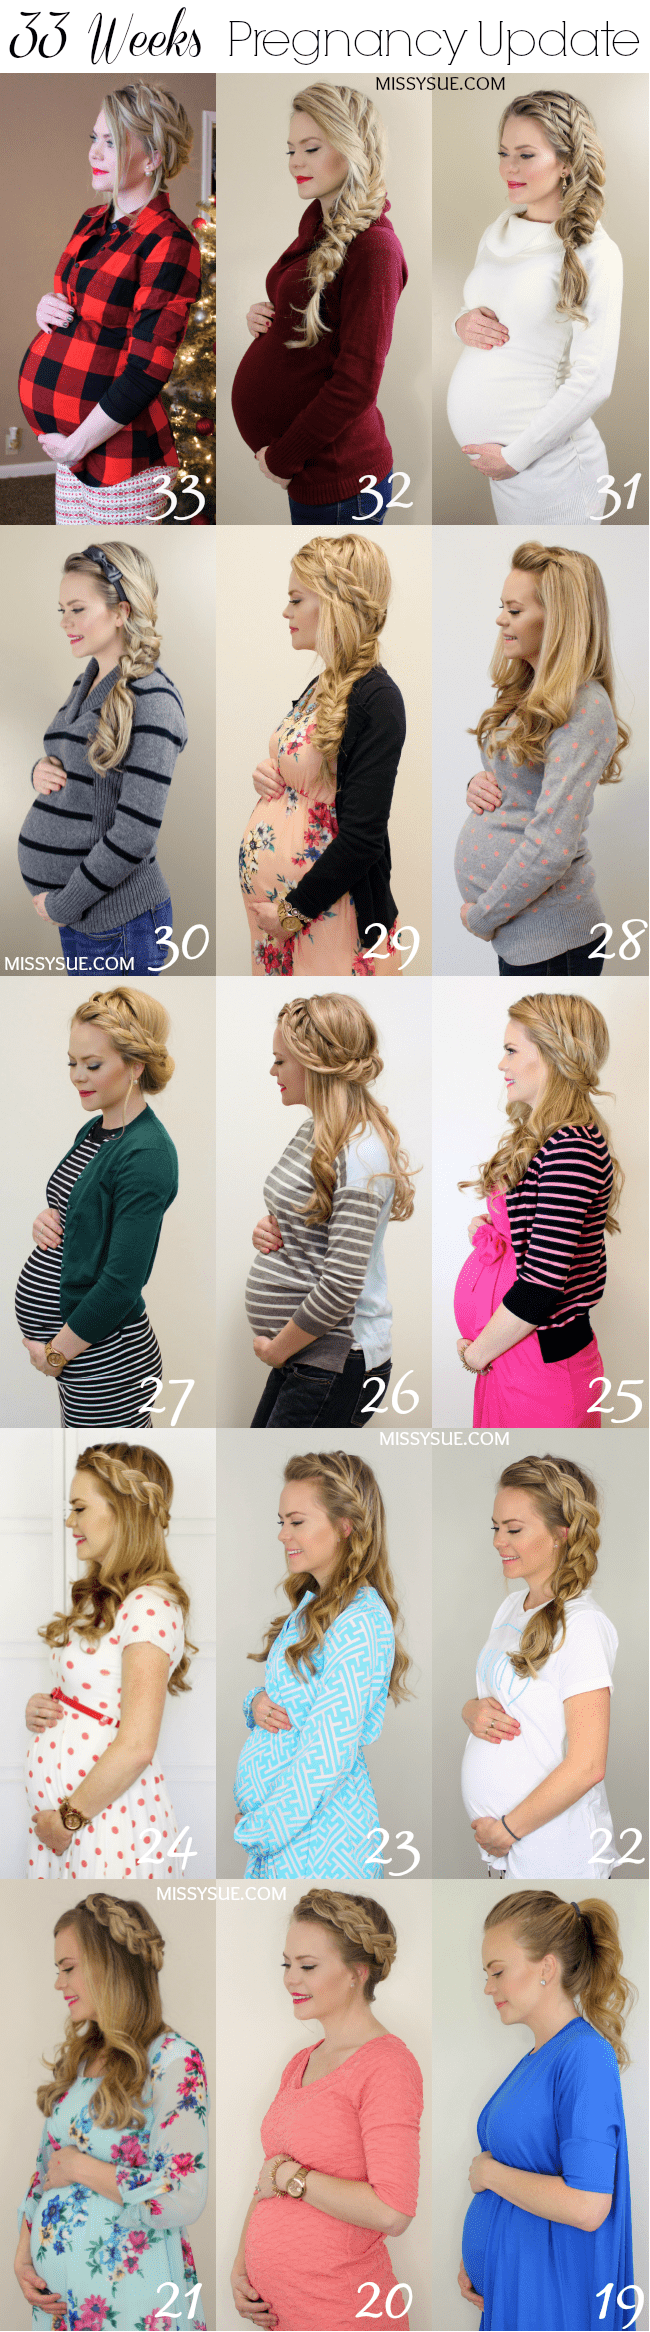 33 Weeks Pregnancy Update